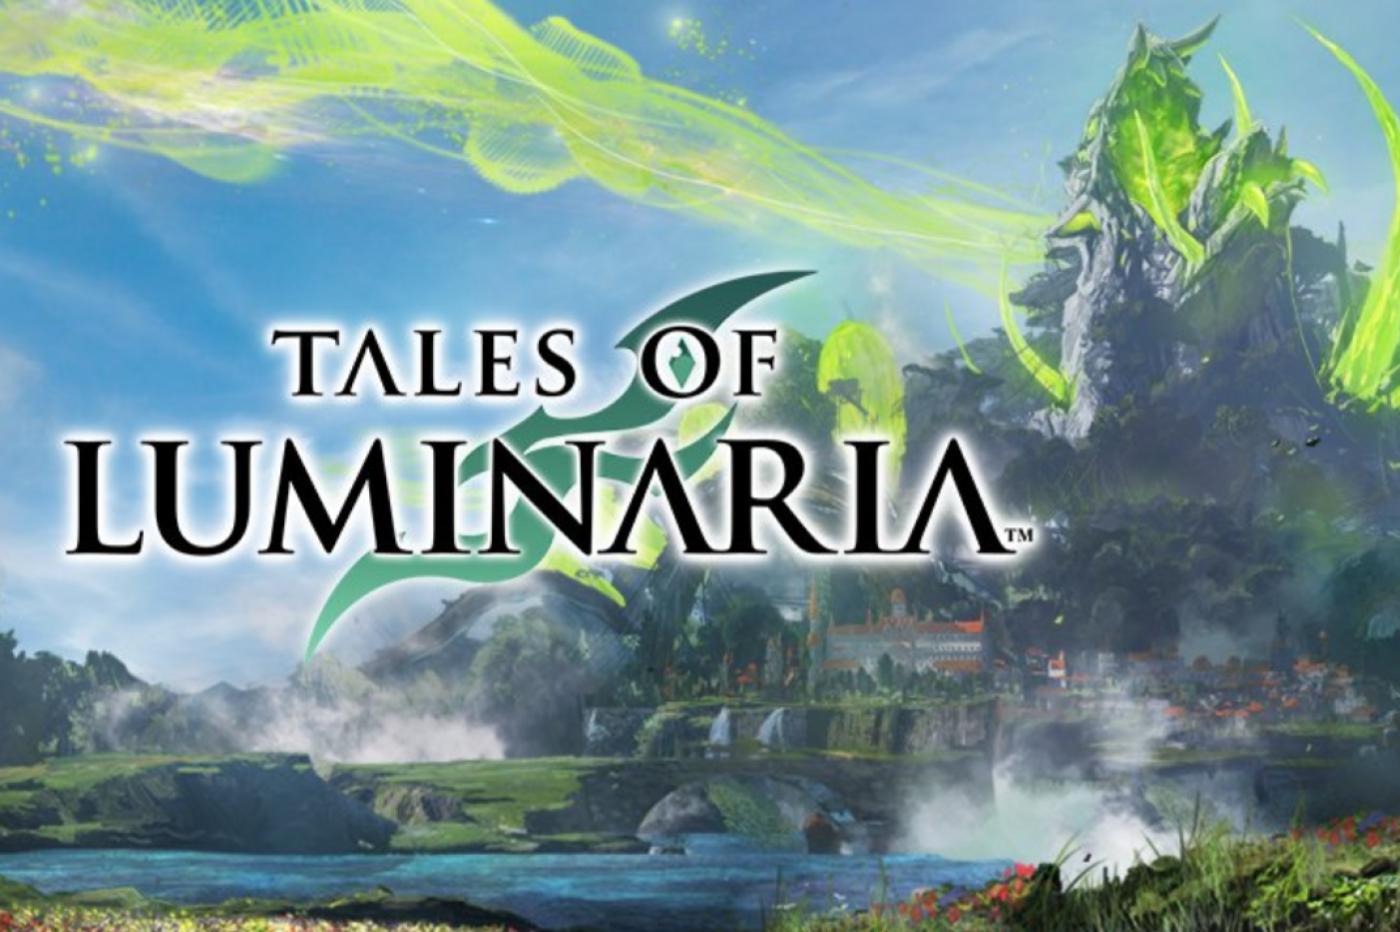 Tales of Luminaria Bandai Namco